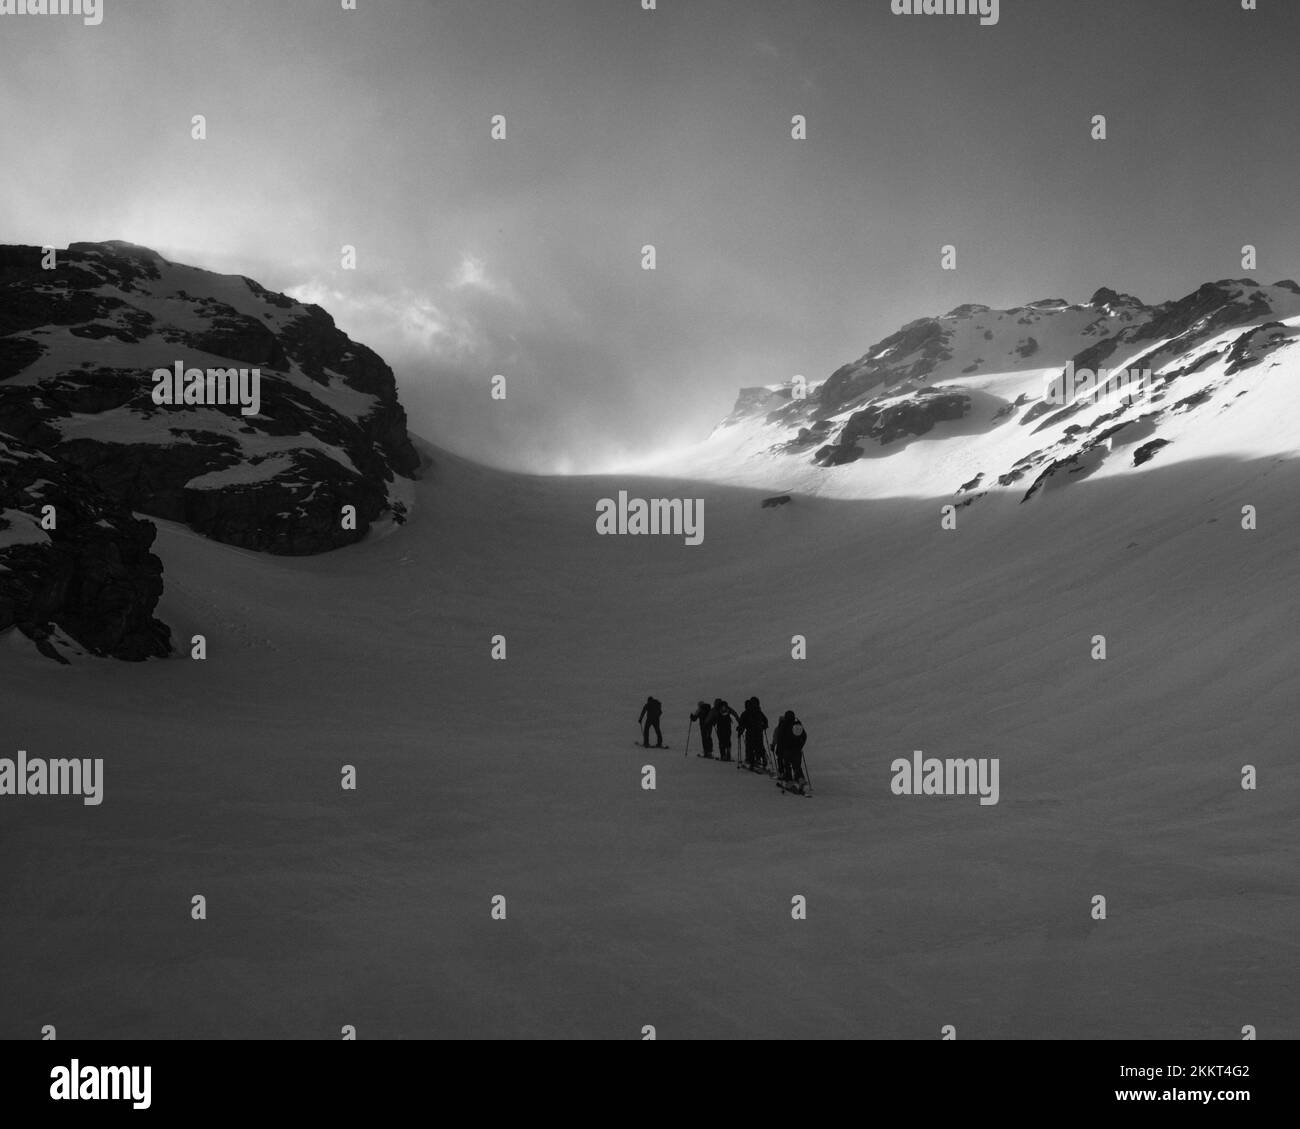 La photo en niveaux de gris d'un groupe de personnes skant sur les montagnes enneigées d'Entremont Banque D'Images